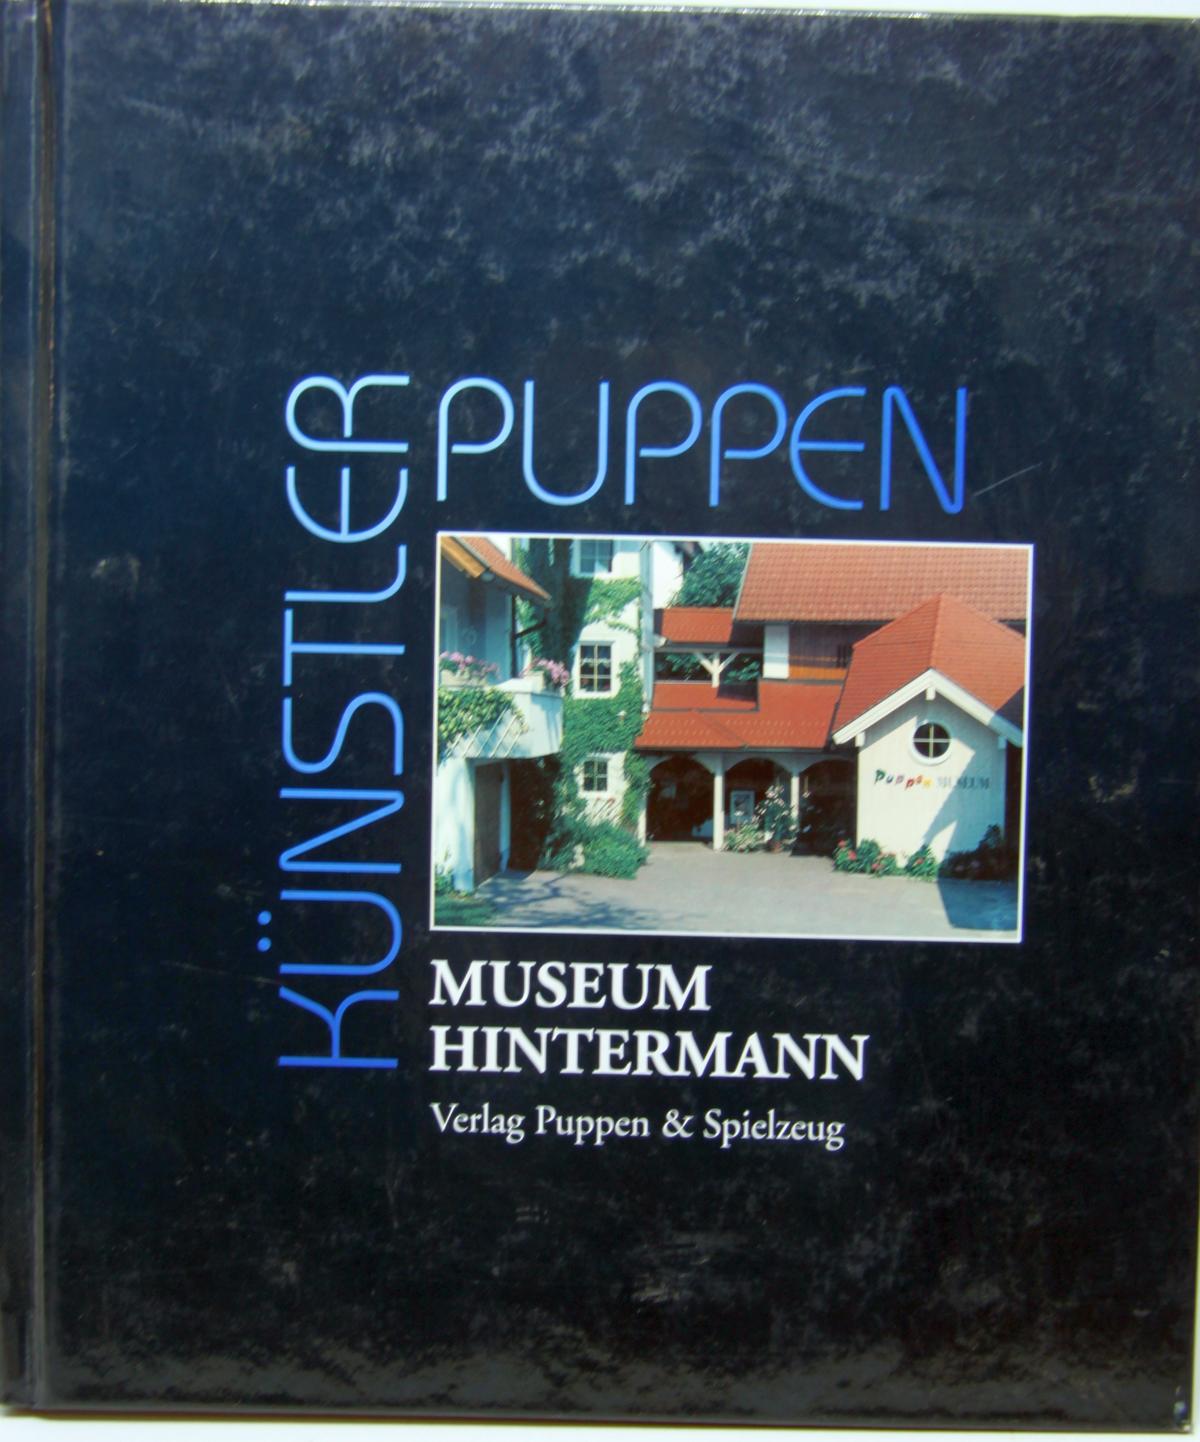 Buch "Künstlerpuppen" Museum Hintermann (Villach), von Ingrid Taupe, Herausgeber: Verlag Puppen & Spielzeug